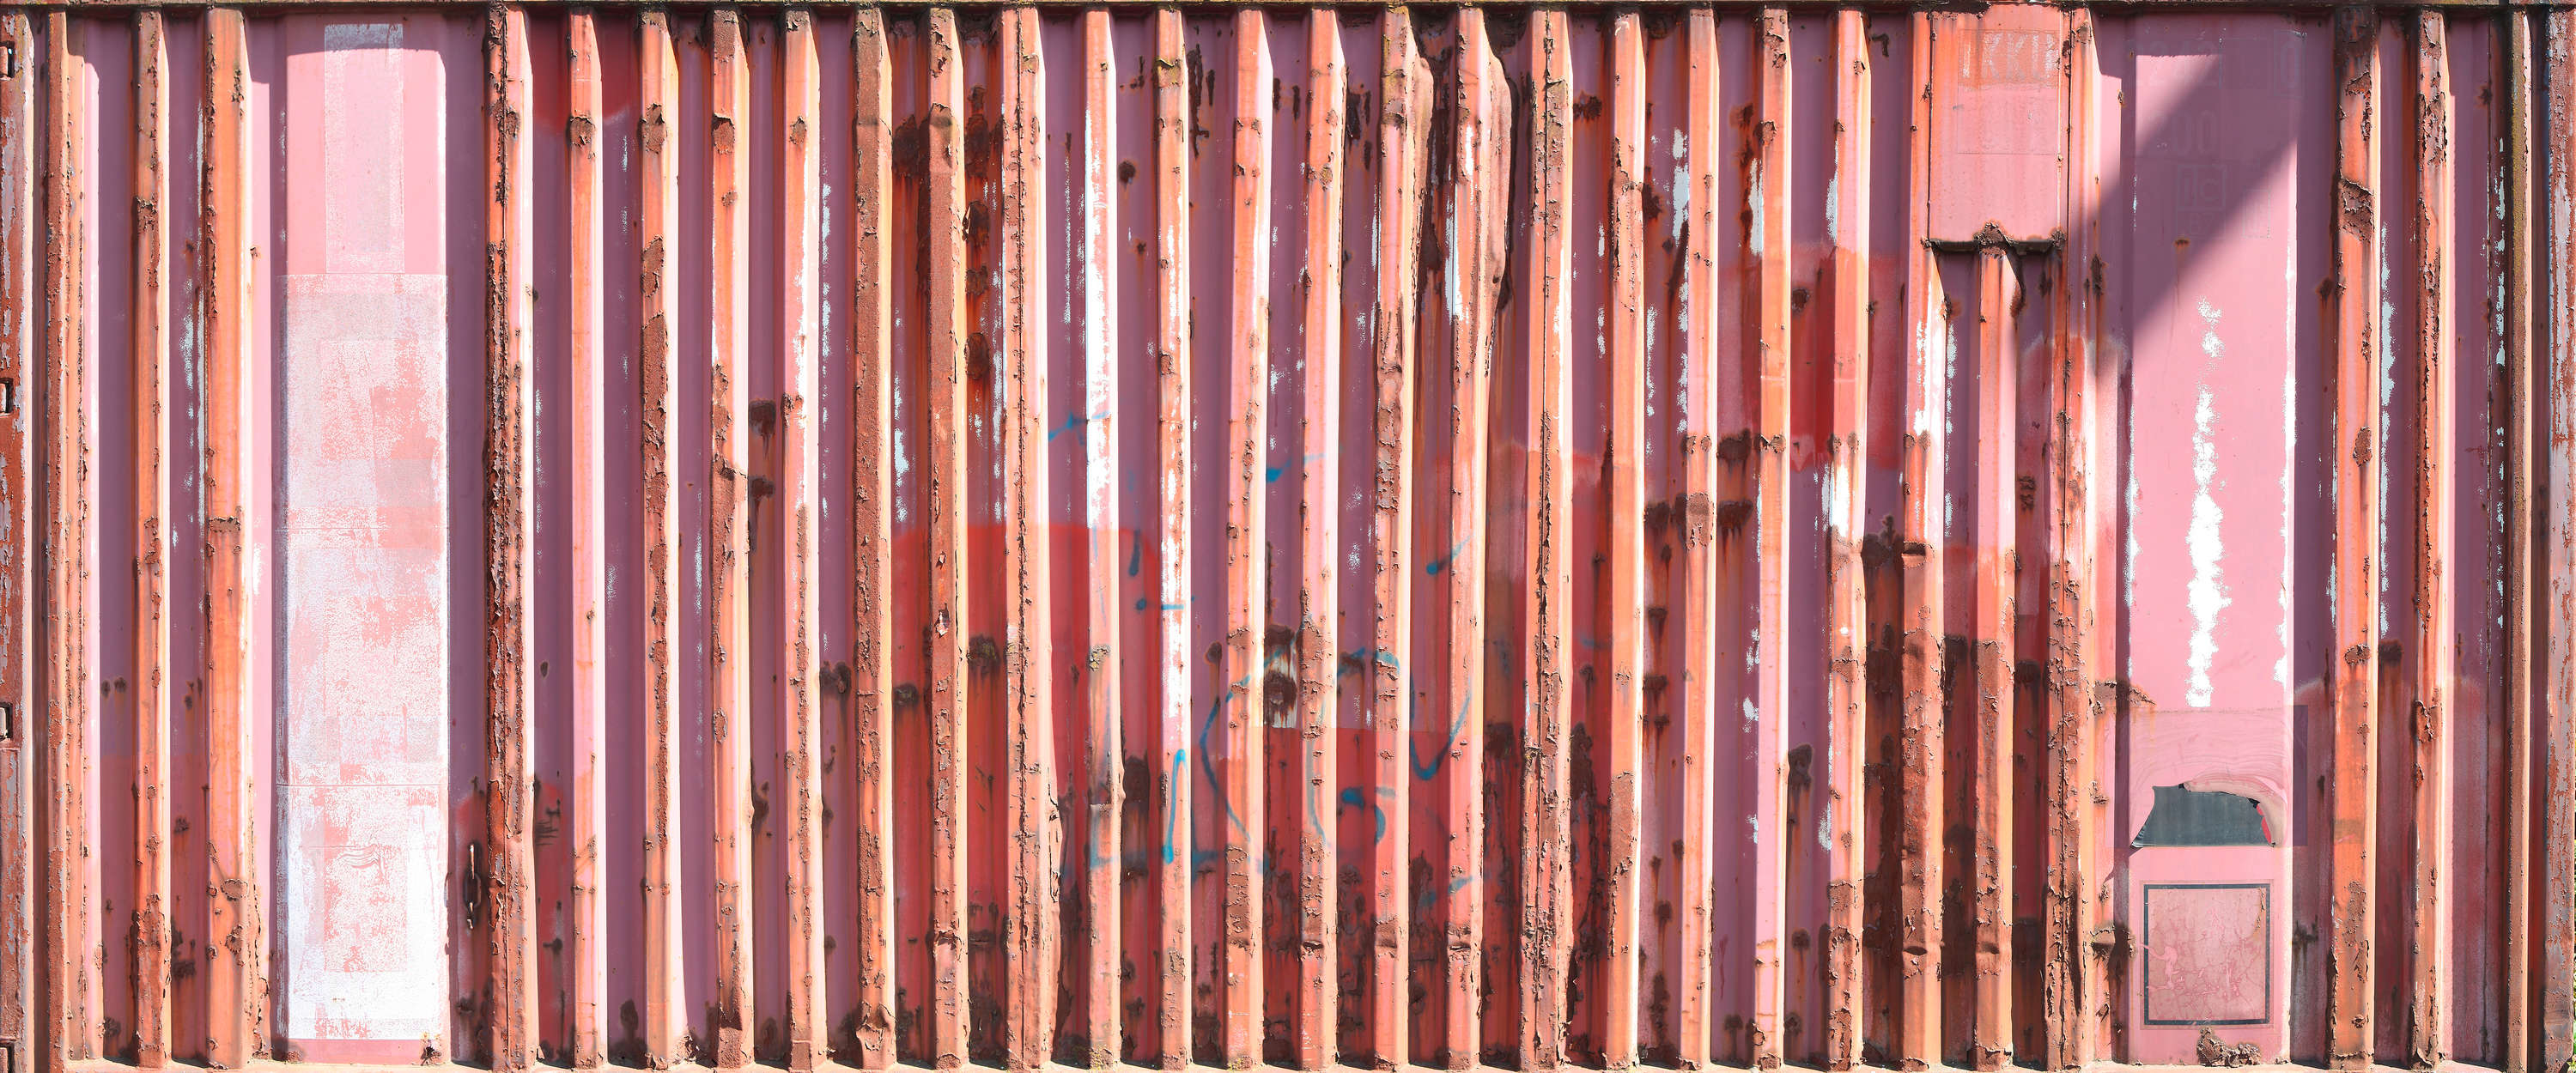             Rode metalen container muurschildering
        